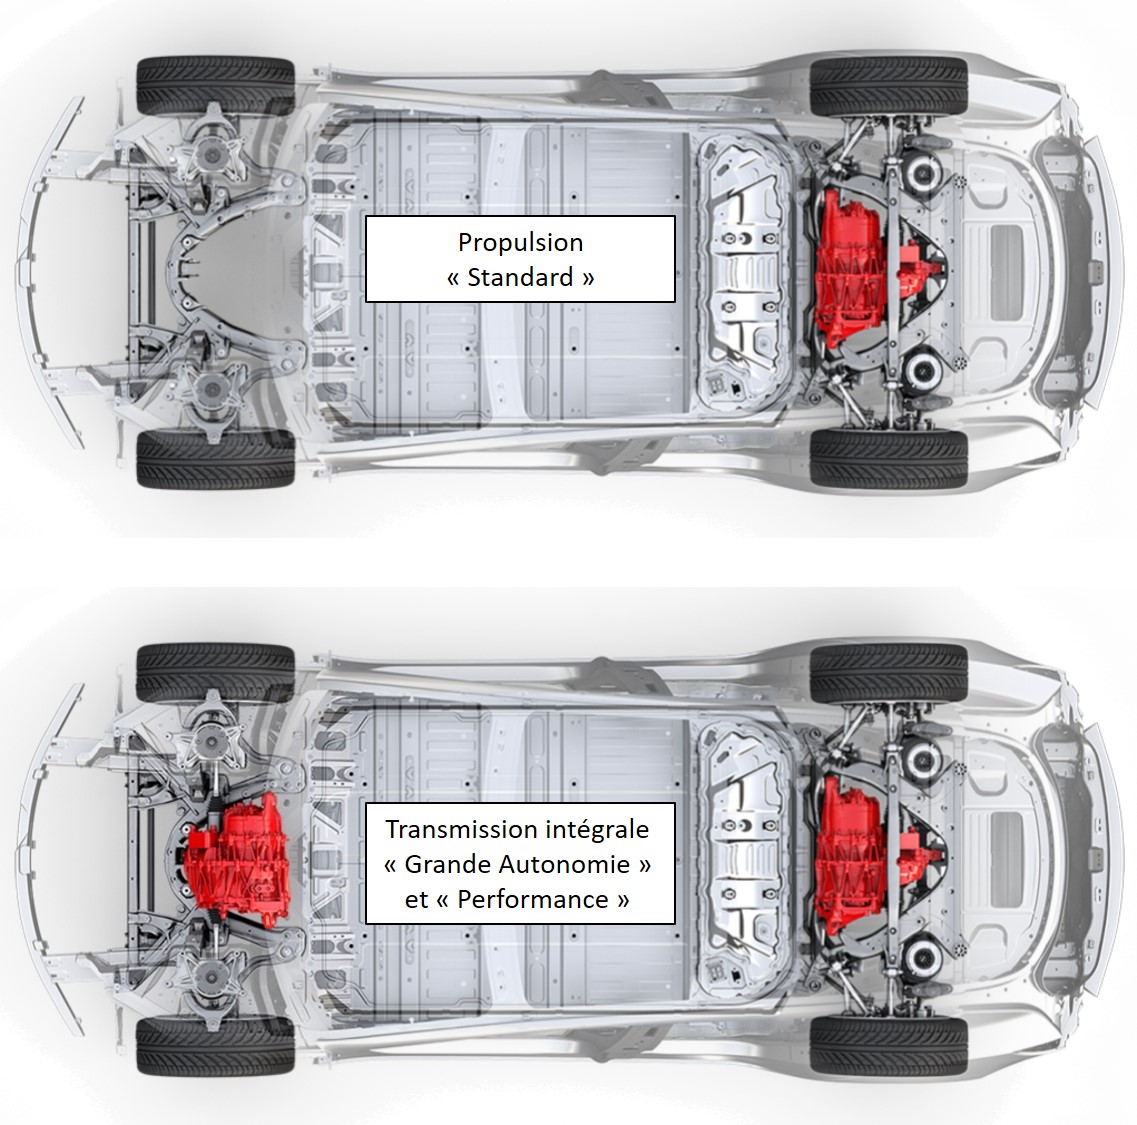 2/2 - Remplacement du moteur sur ma Tesla Model 3, retour d'expérience SAV  Tesla 😰 